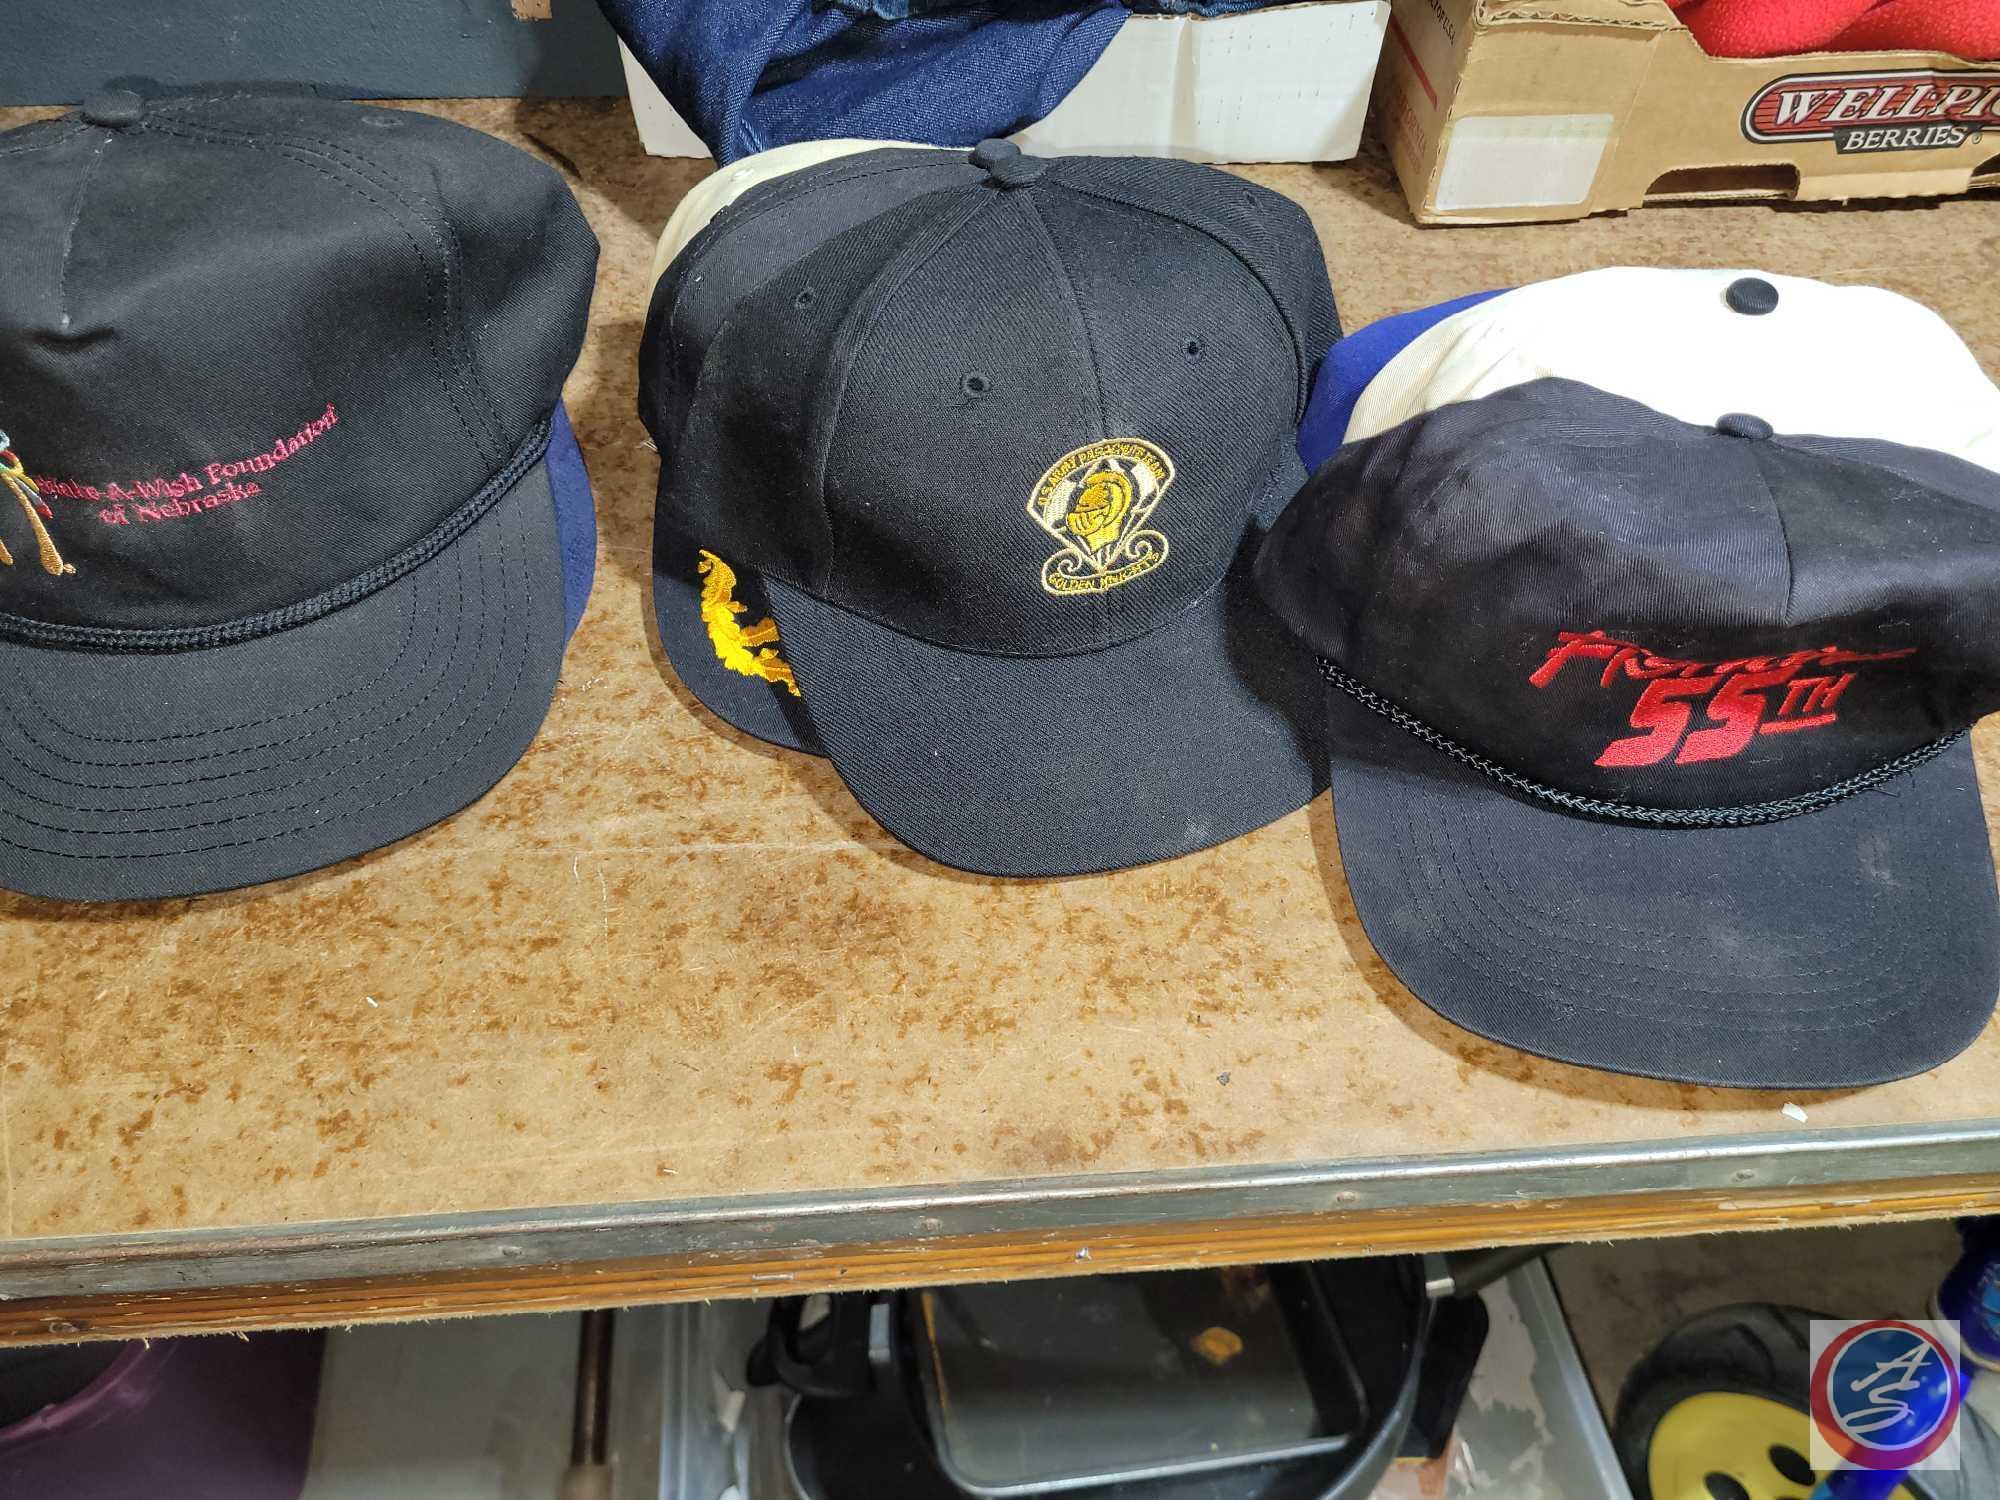 Asst of hats